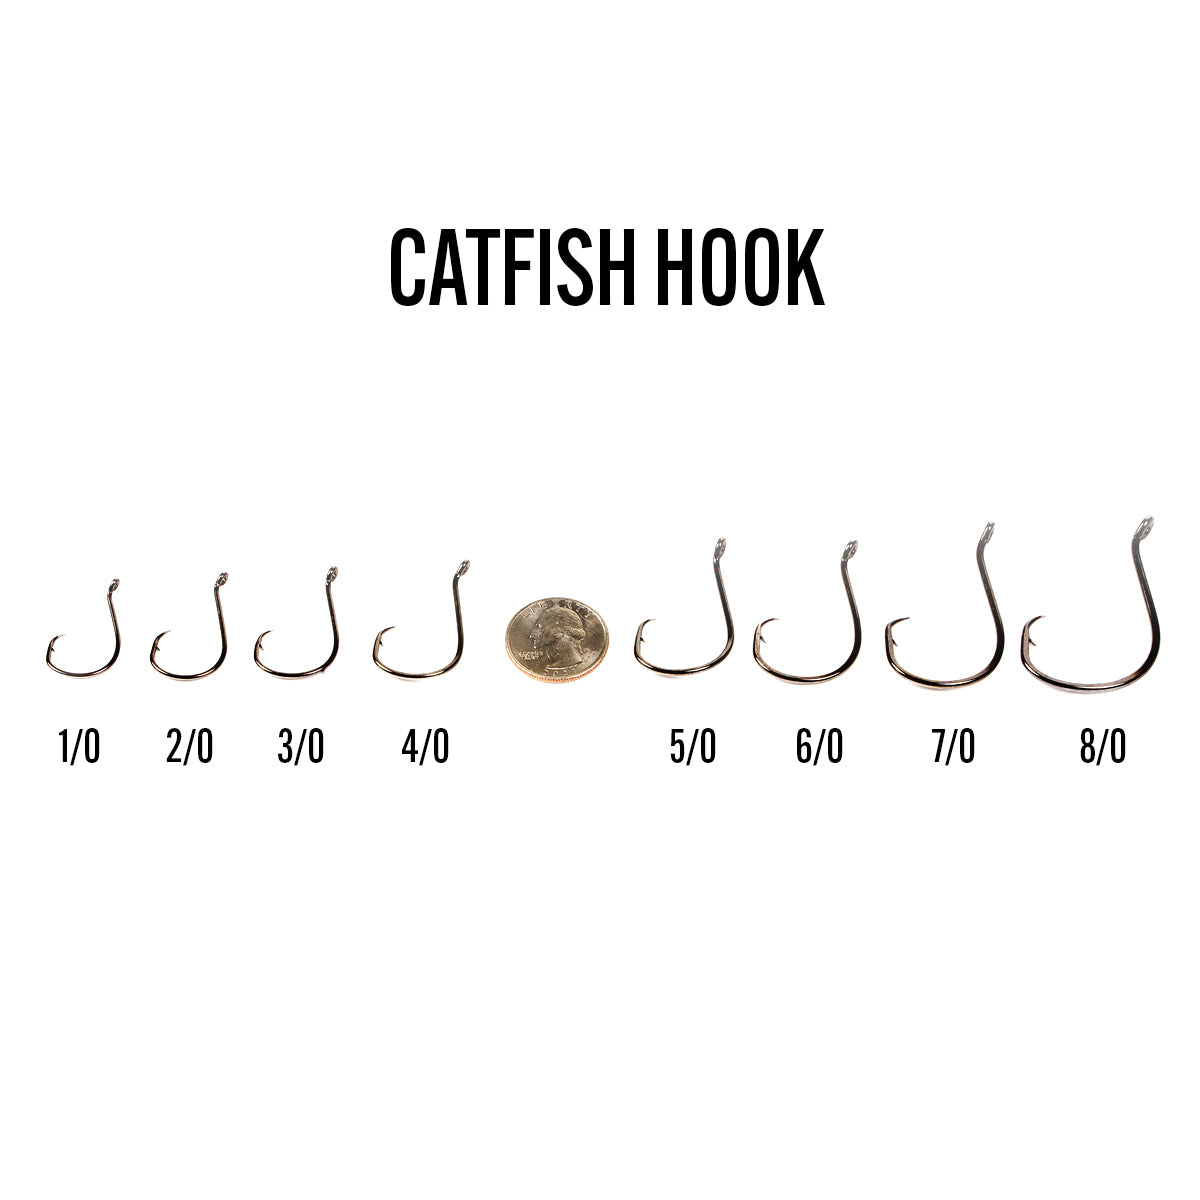 6th Sense Catfish Hook 6/0